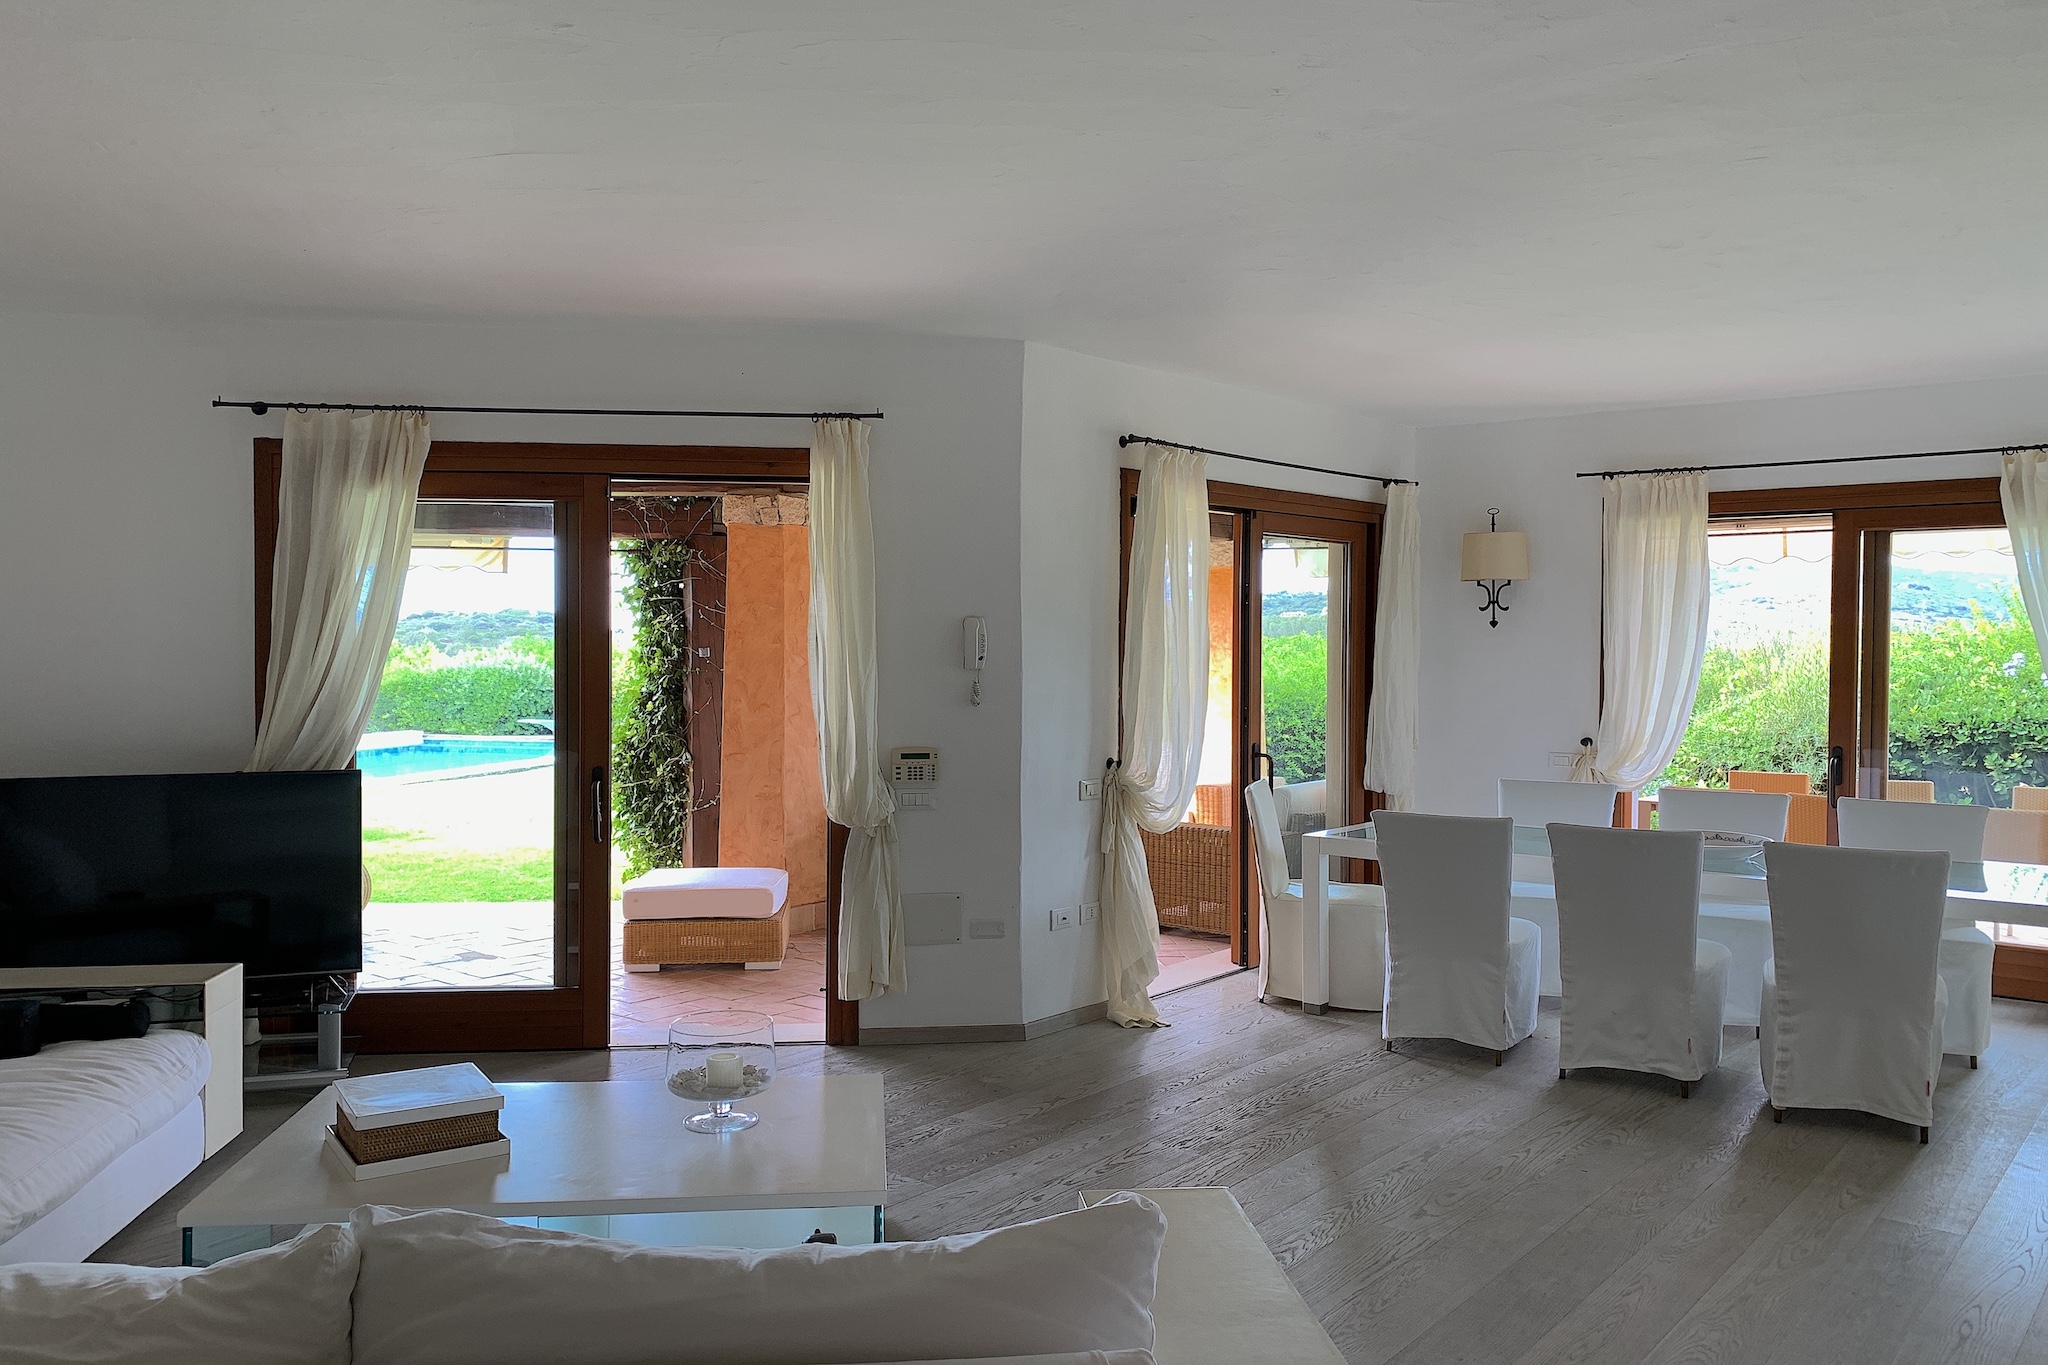 Gestione case vacanza Sardegna - Villa Eritrina - Chia